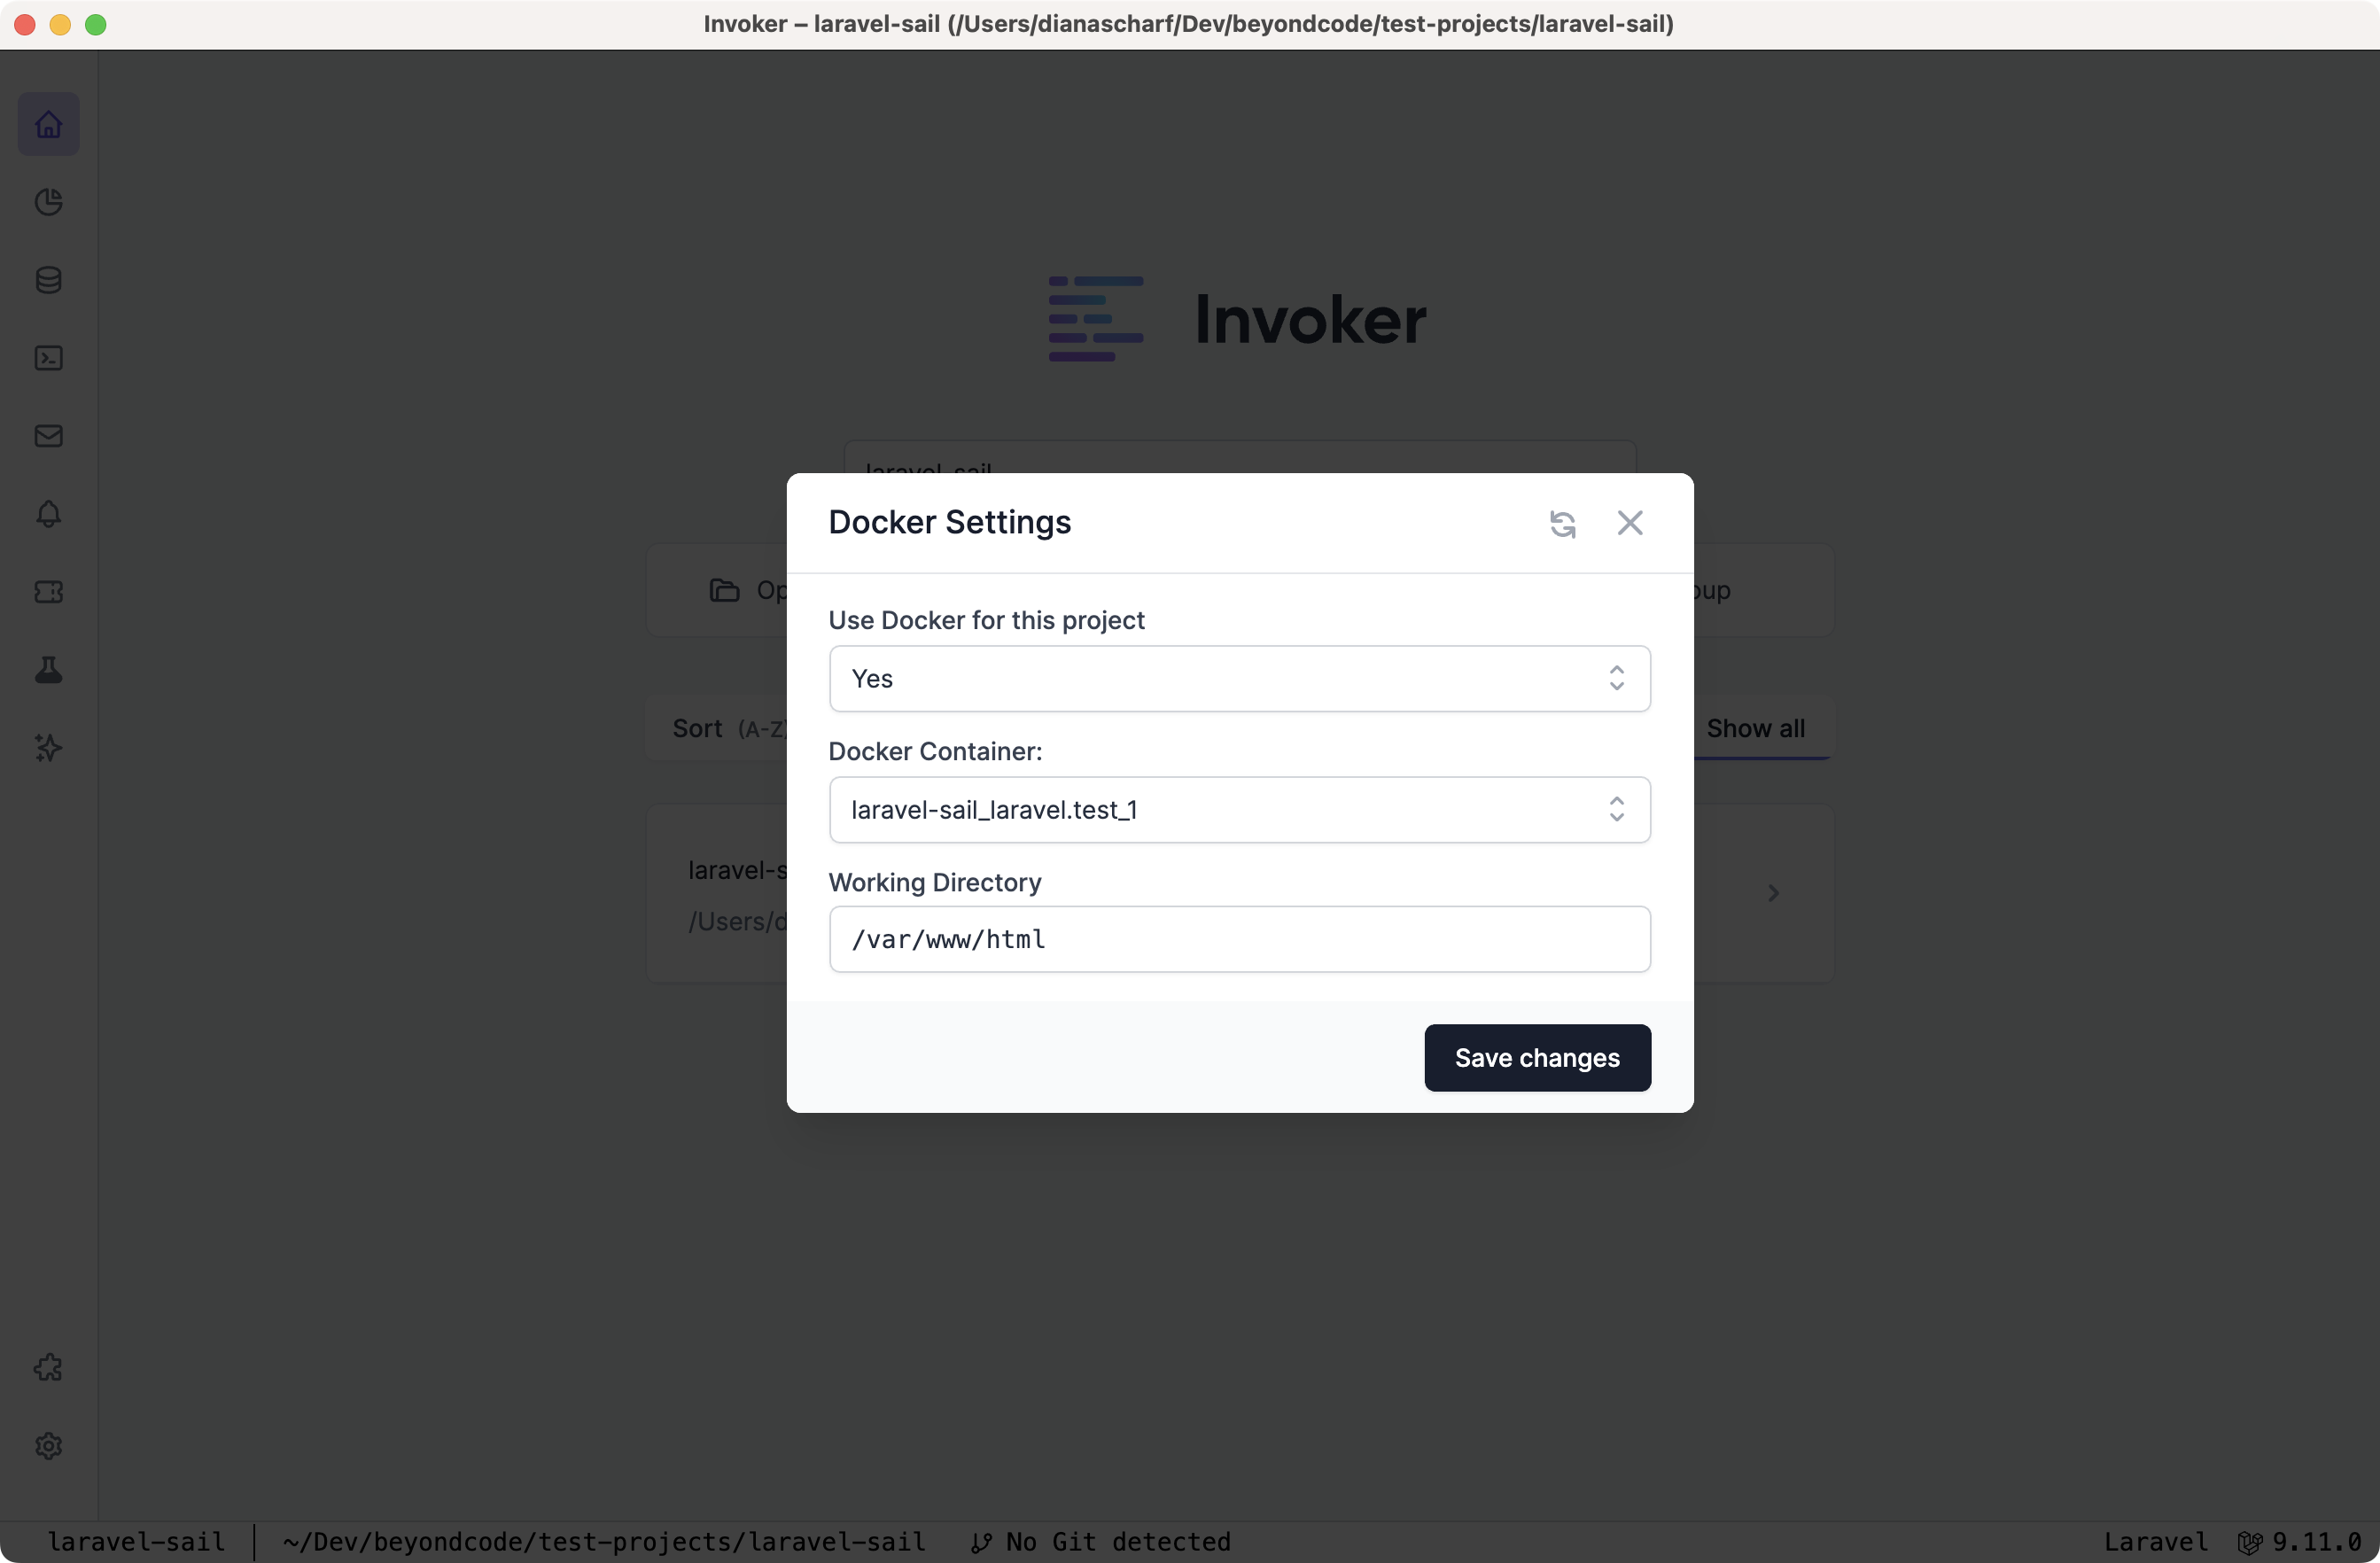 Docker settings for Invoker